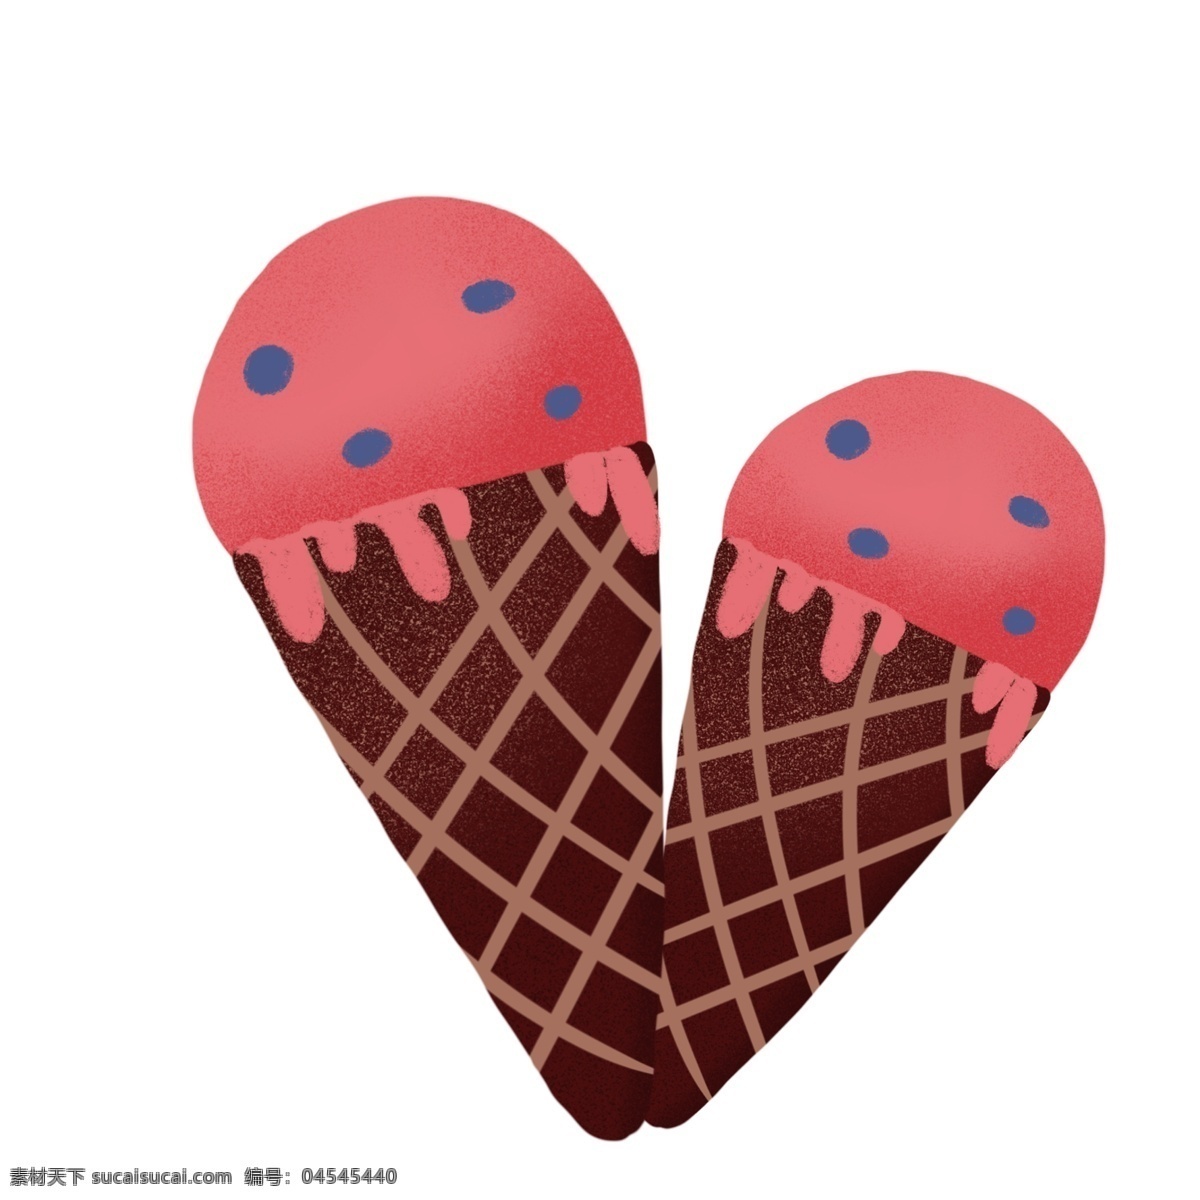 卡通 冰淇淋 设计素材 卡通的冰淇淋 美味的冰淇淋 卡通冰淇淋 食物 夏季食物 夏季冰棒 矢量冰淇淋